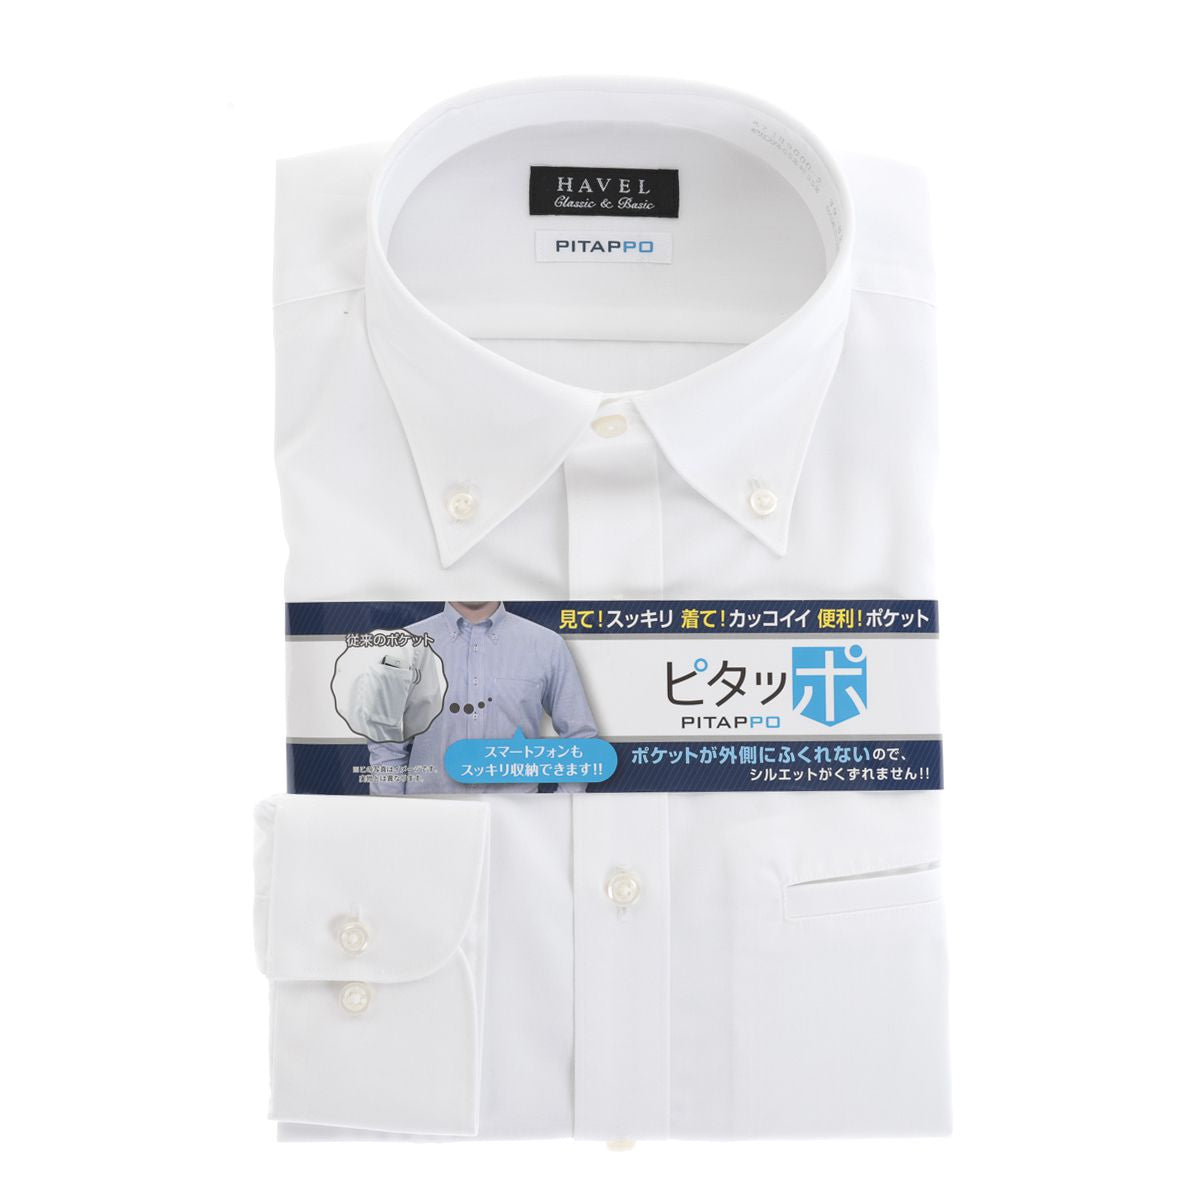 【ボタンダウン】<br>大容量胸ポケ「ピタッポ」<br>白シャツ 形態安定 長袖